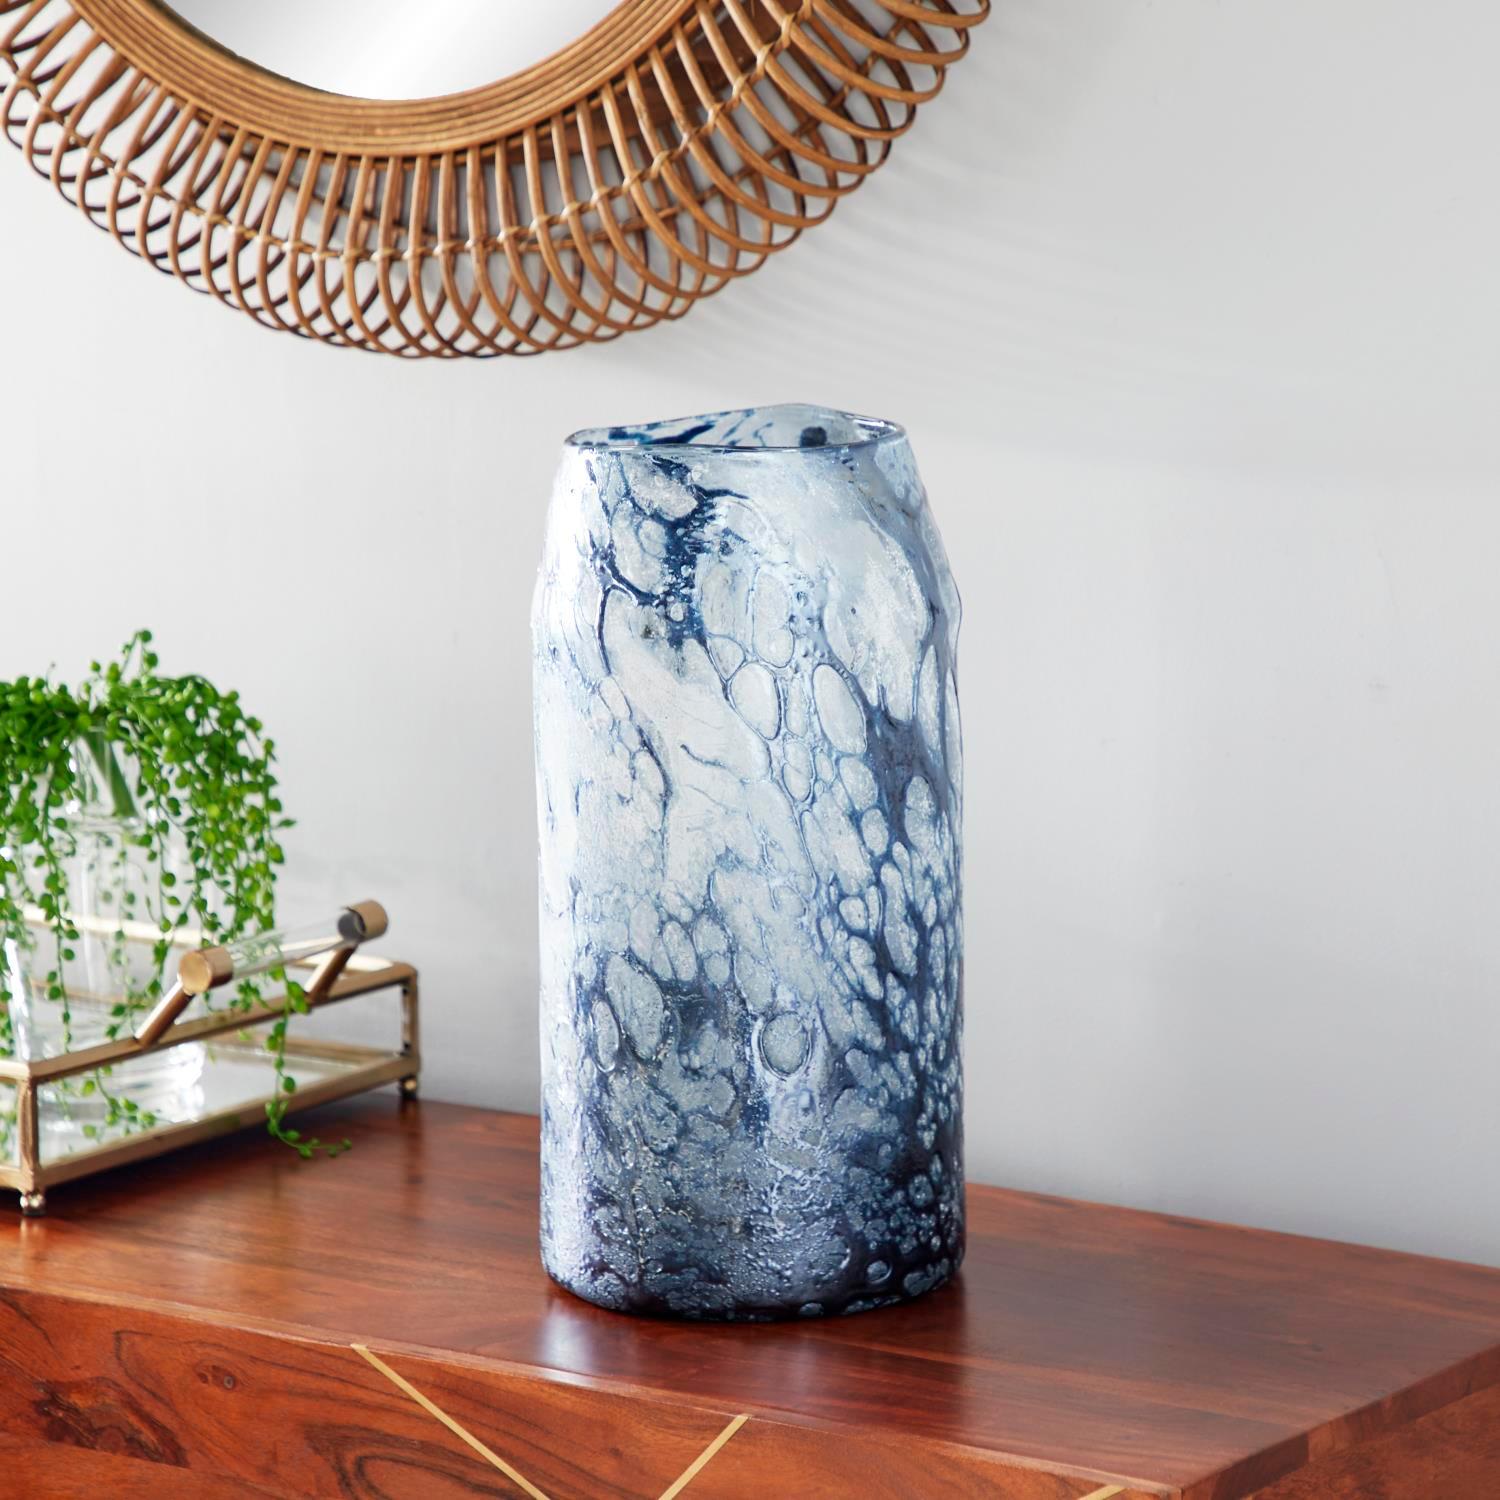 Zimlay Cylindrical Bubble Texture Blue Glass Vase 60403